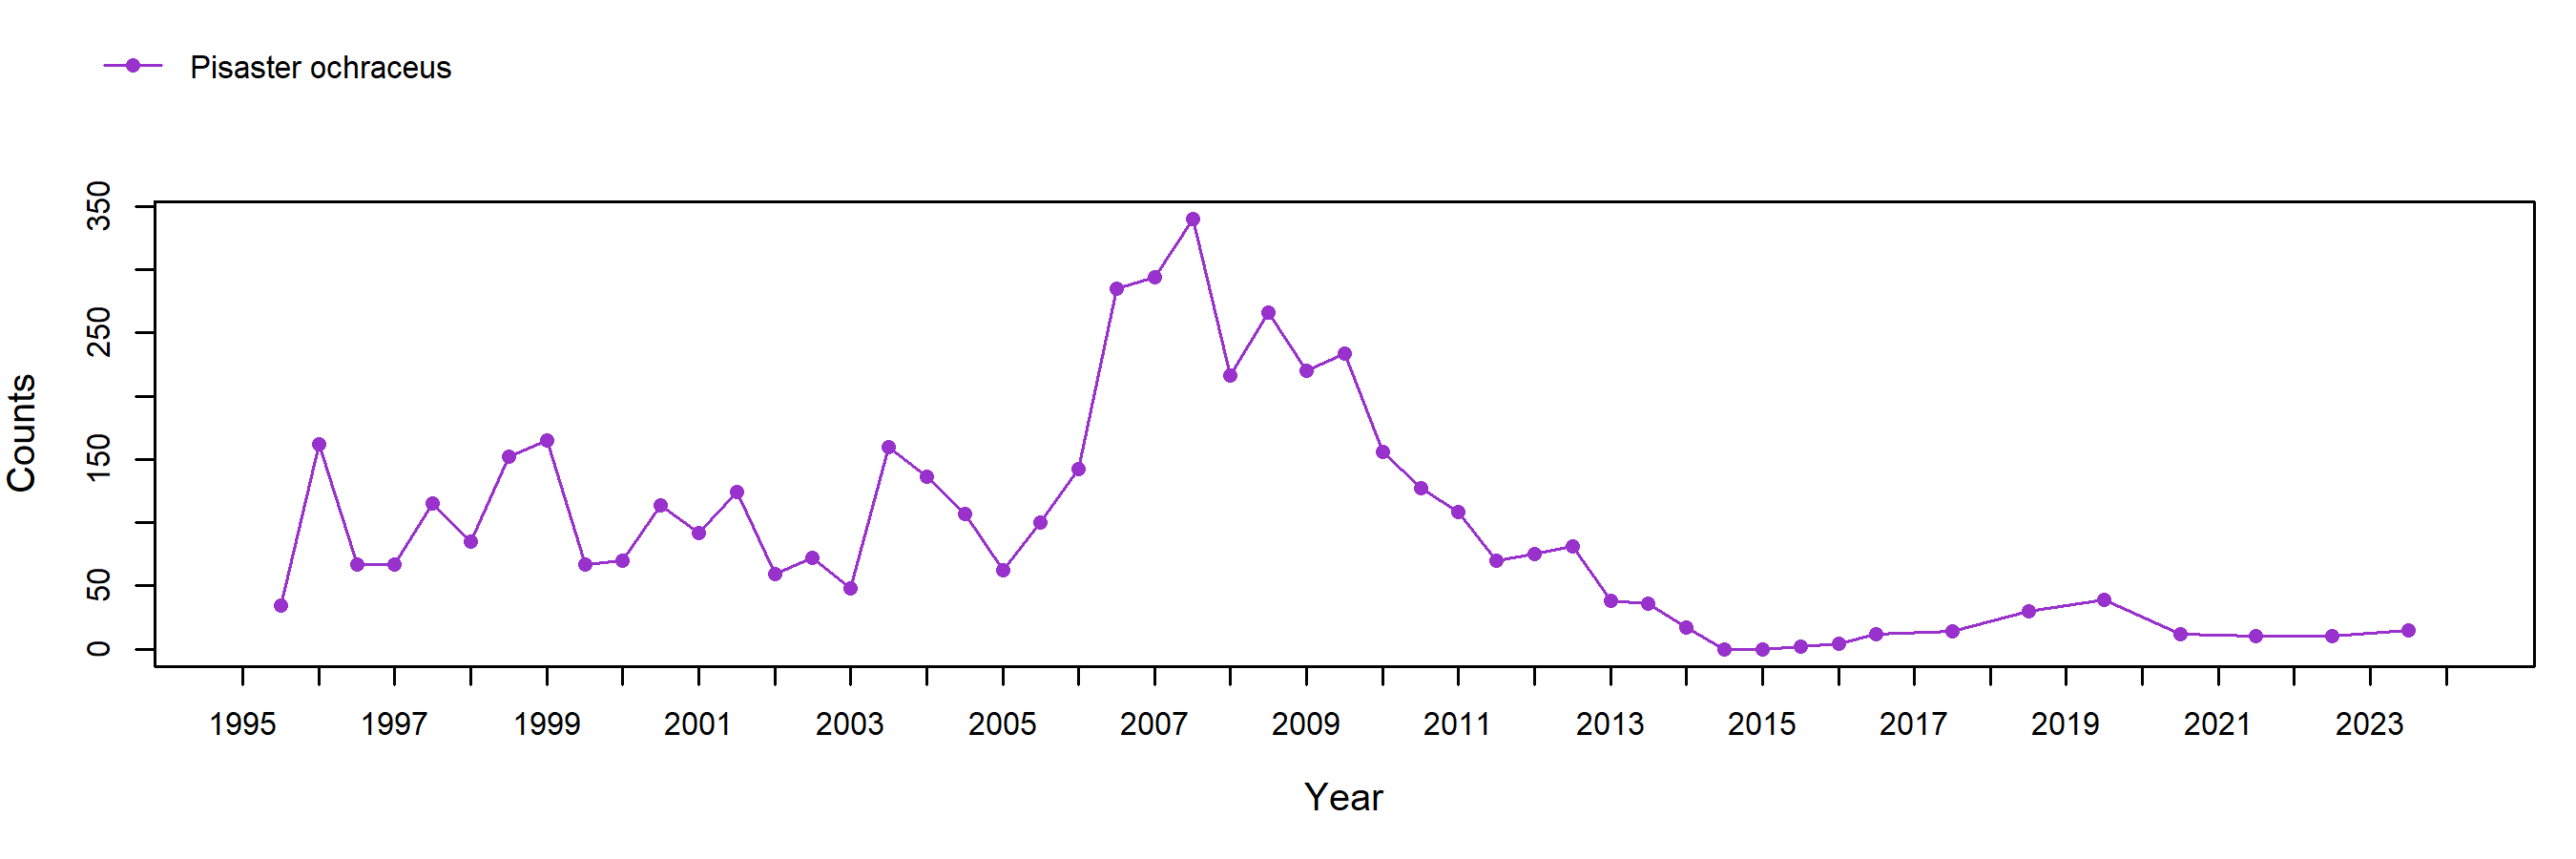 Hazards Pisaster trend plot